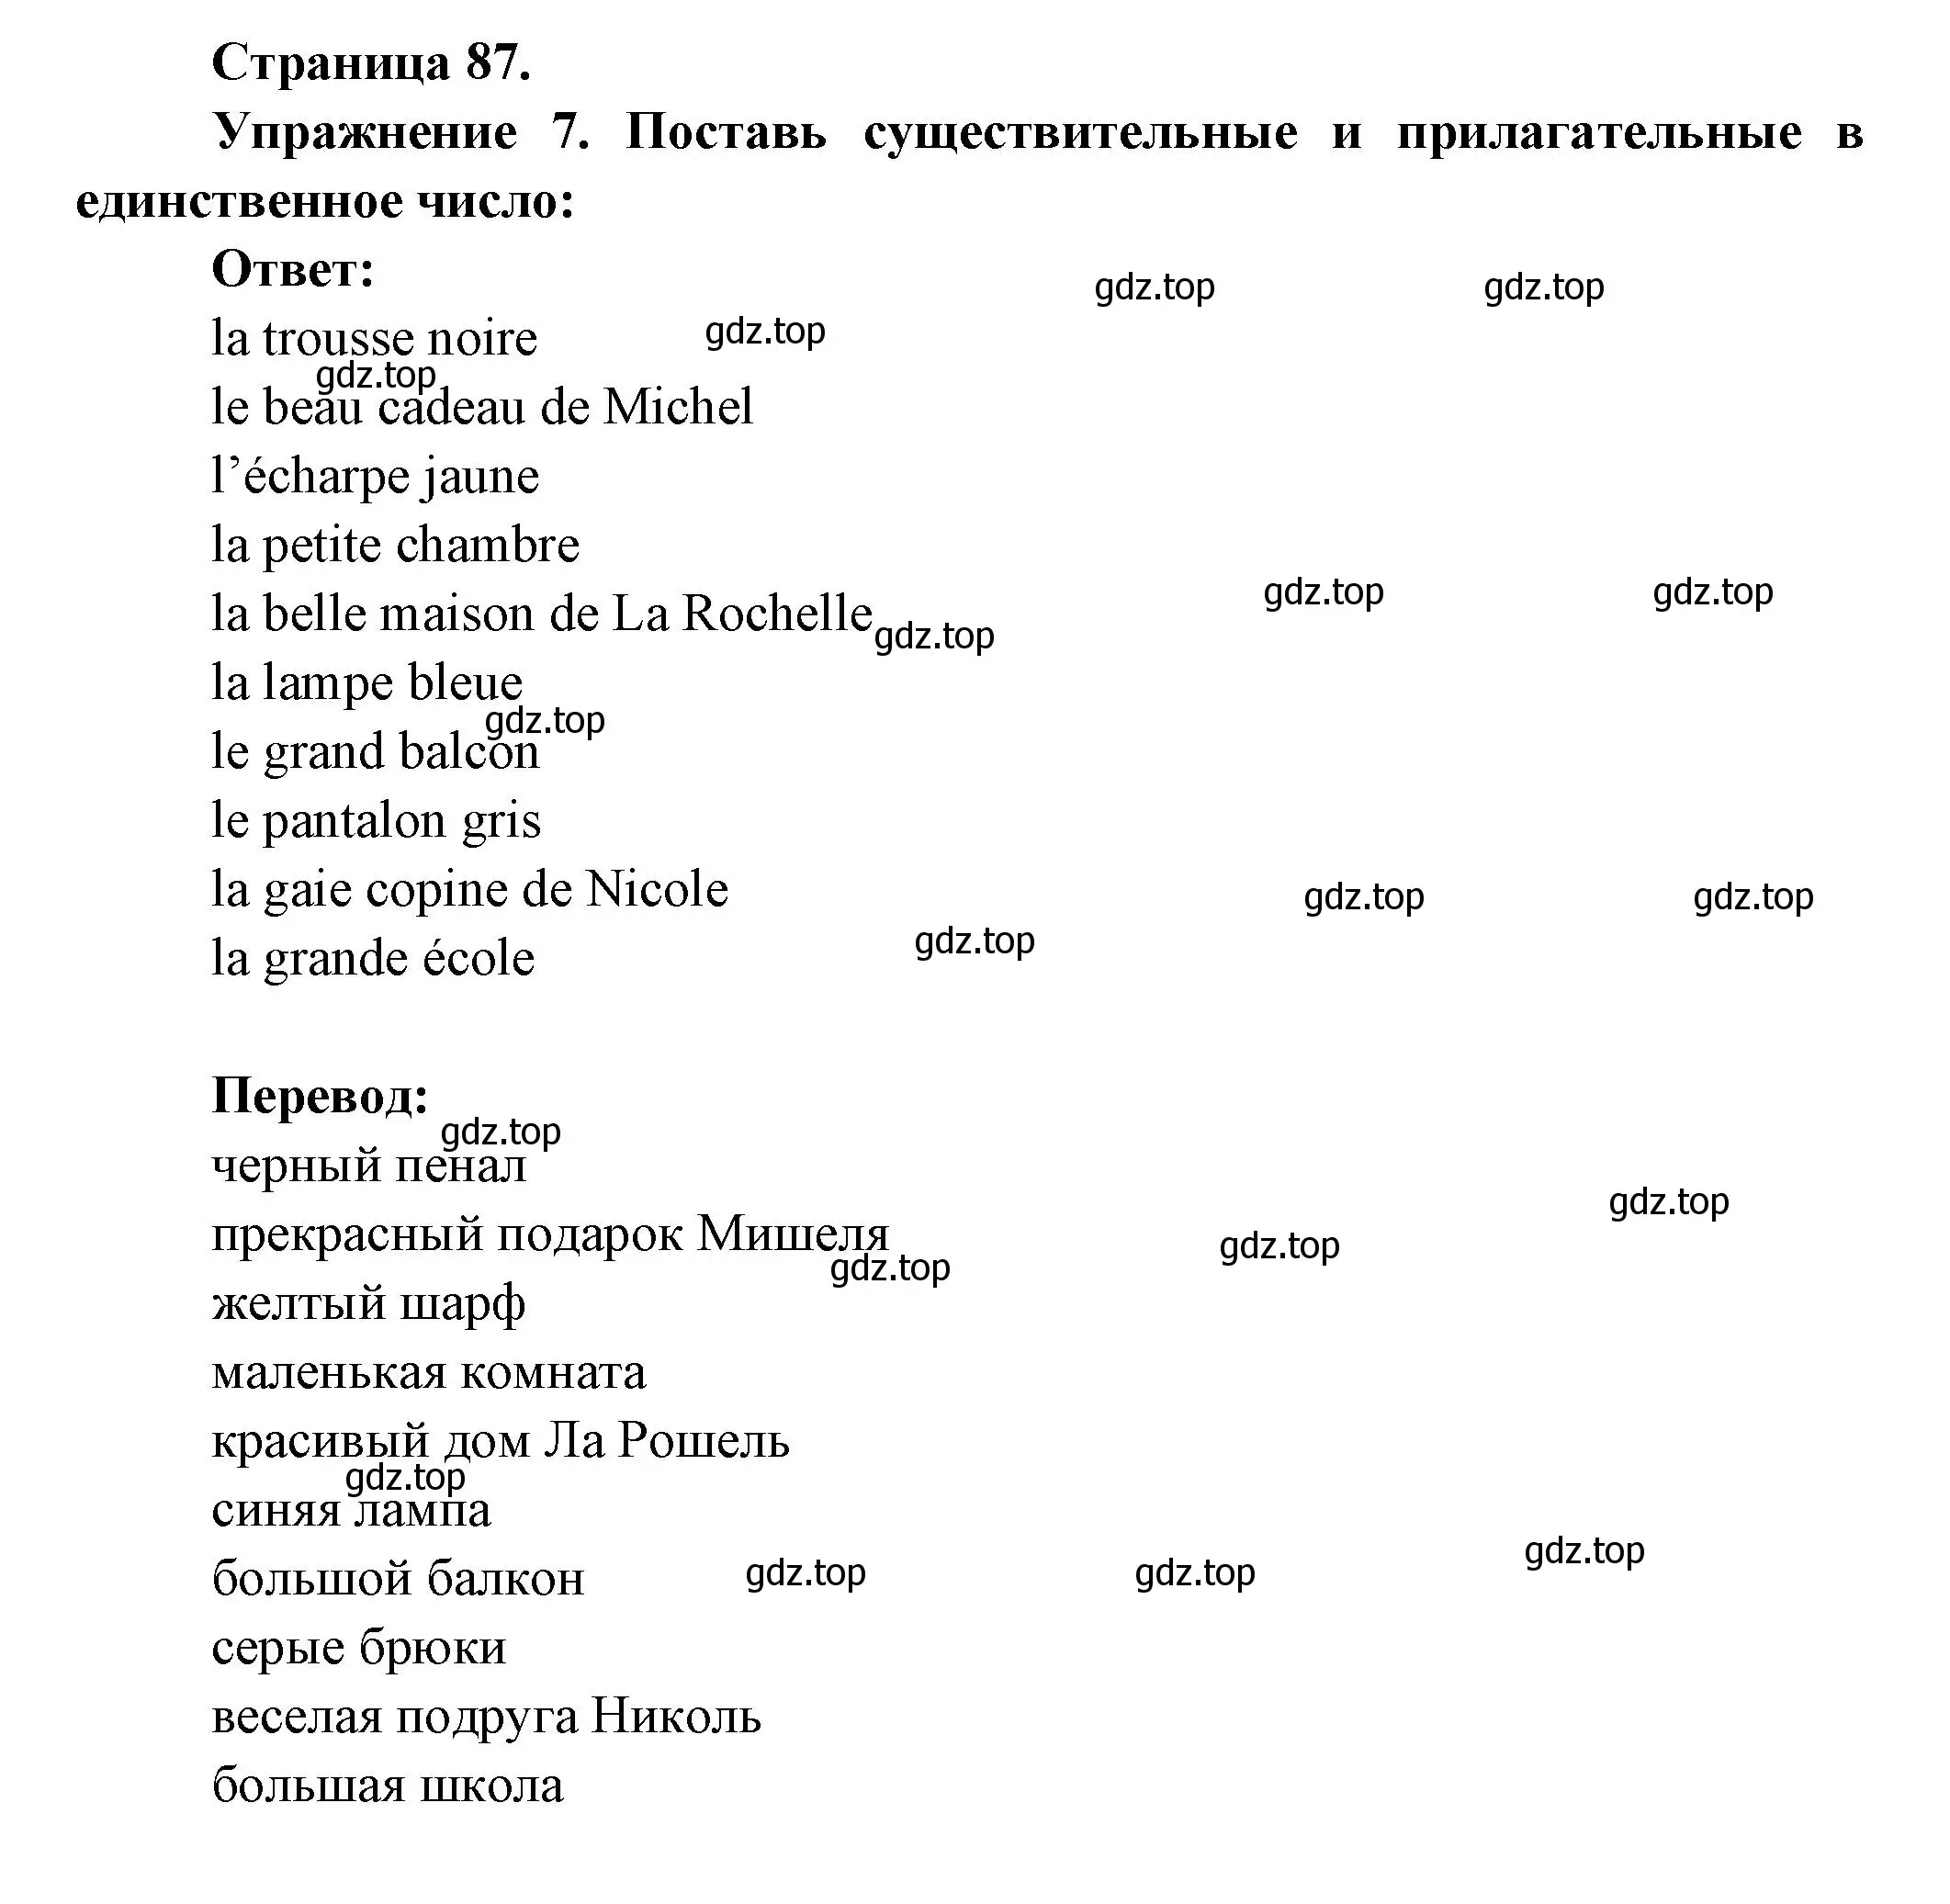 Решение номер 7 (страница 87) гдз по французскому языку 5 класс Береговская, Белосельская, учебник 1 часть